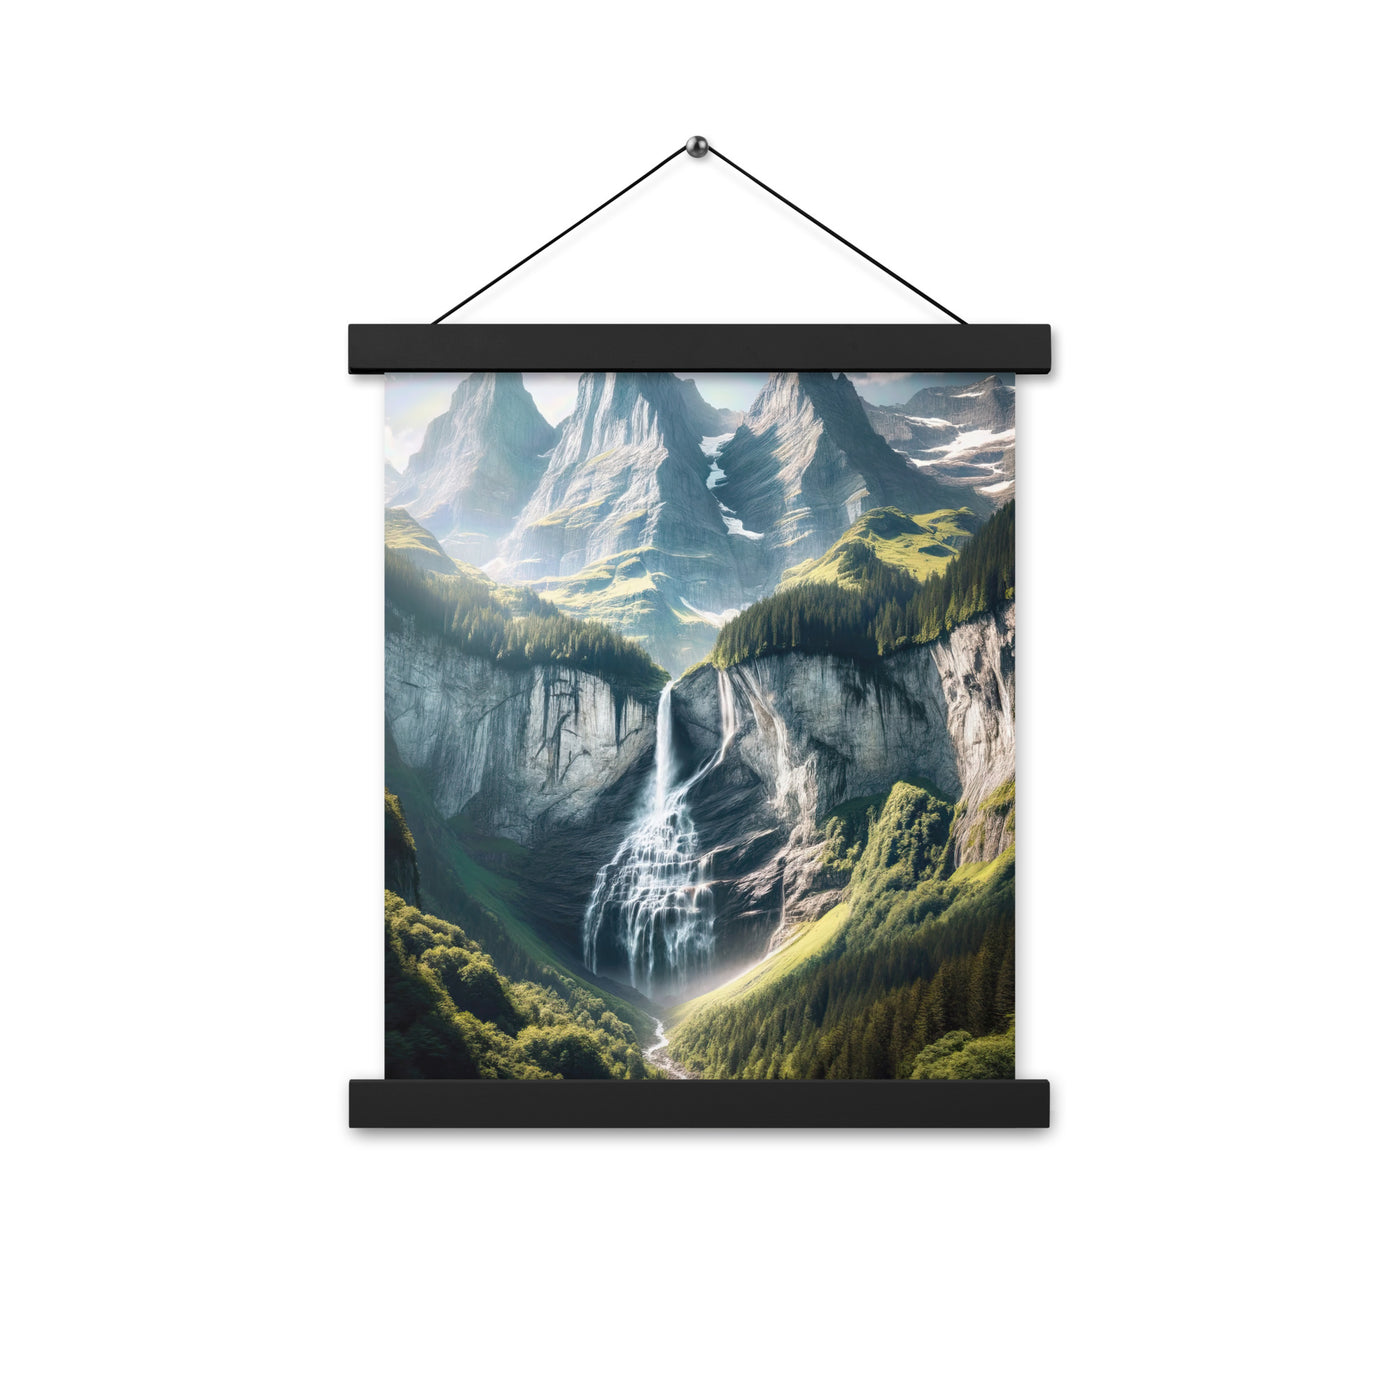 Foto der sommerlichen Alpen mit üppigen Gipfeln und Wasserfall - Premium Poster mit Aufhängung berge xxx yyy zzz 27.9 x 35.6 cm